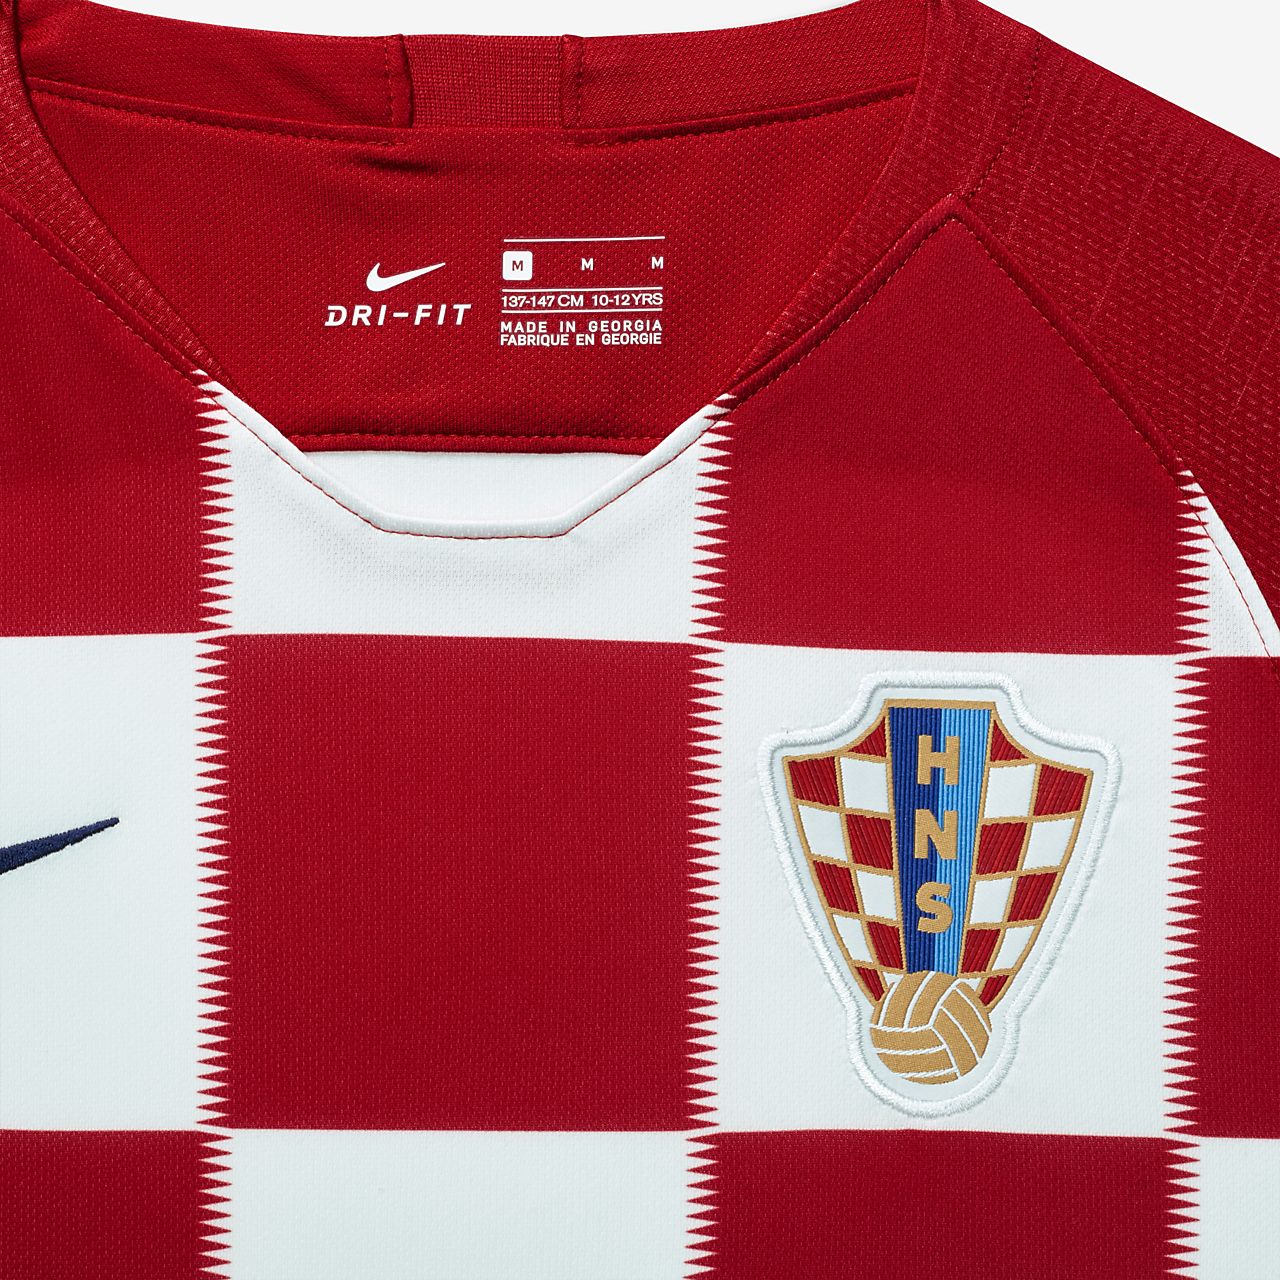 croatia 2018 kit